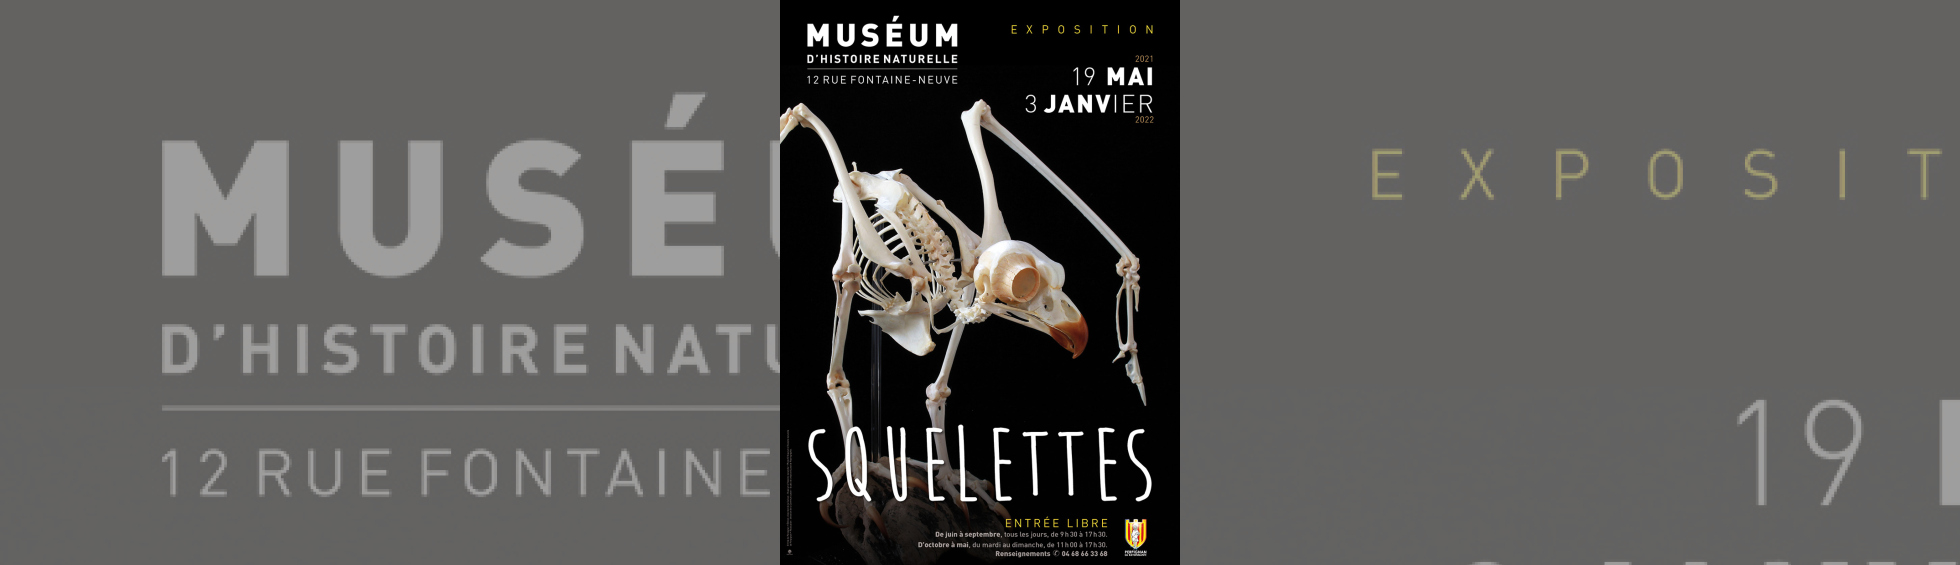 Muséeum - exposition "Squelettes"